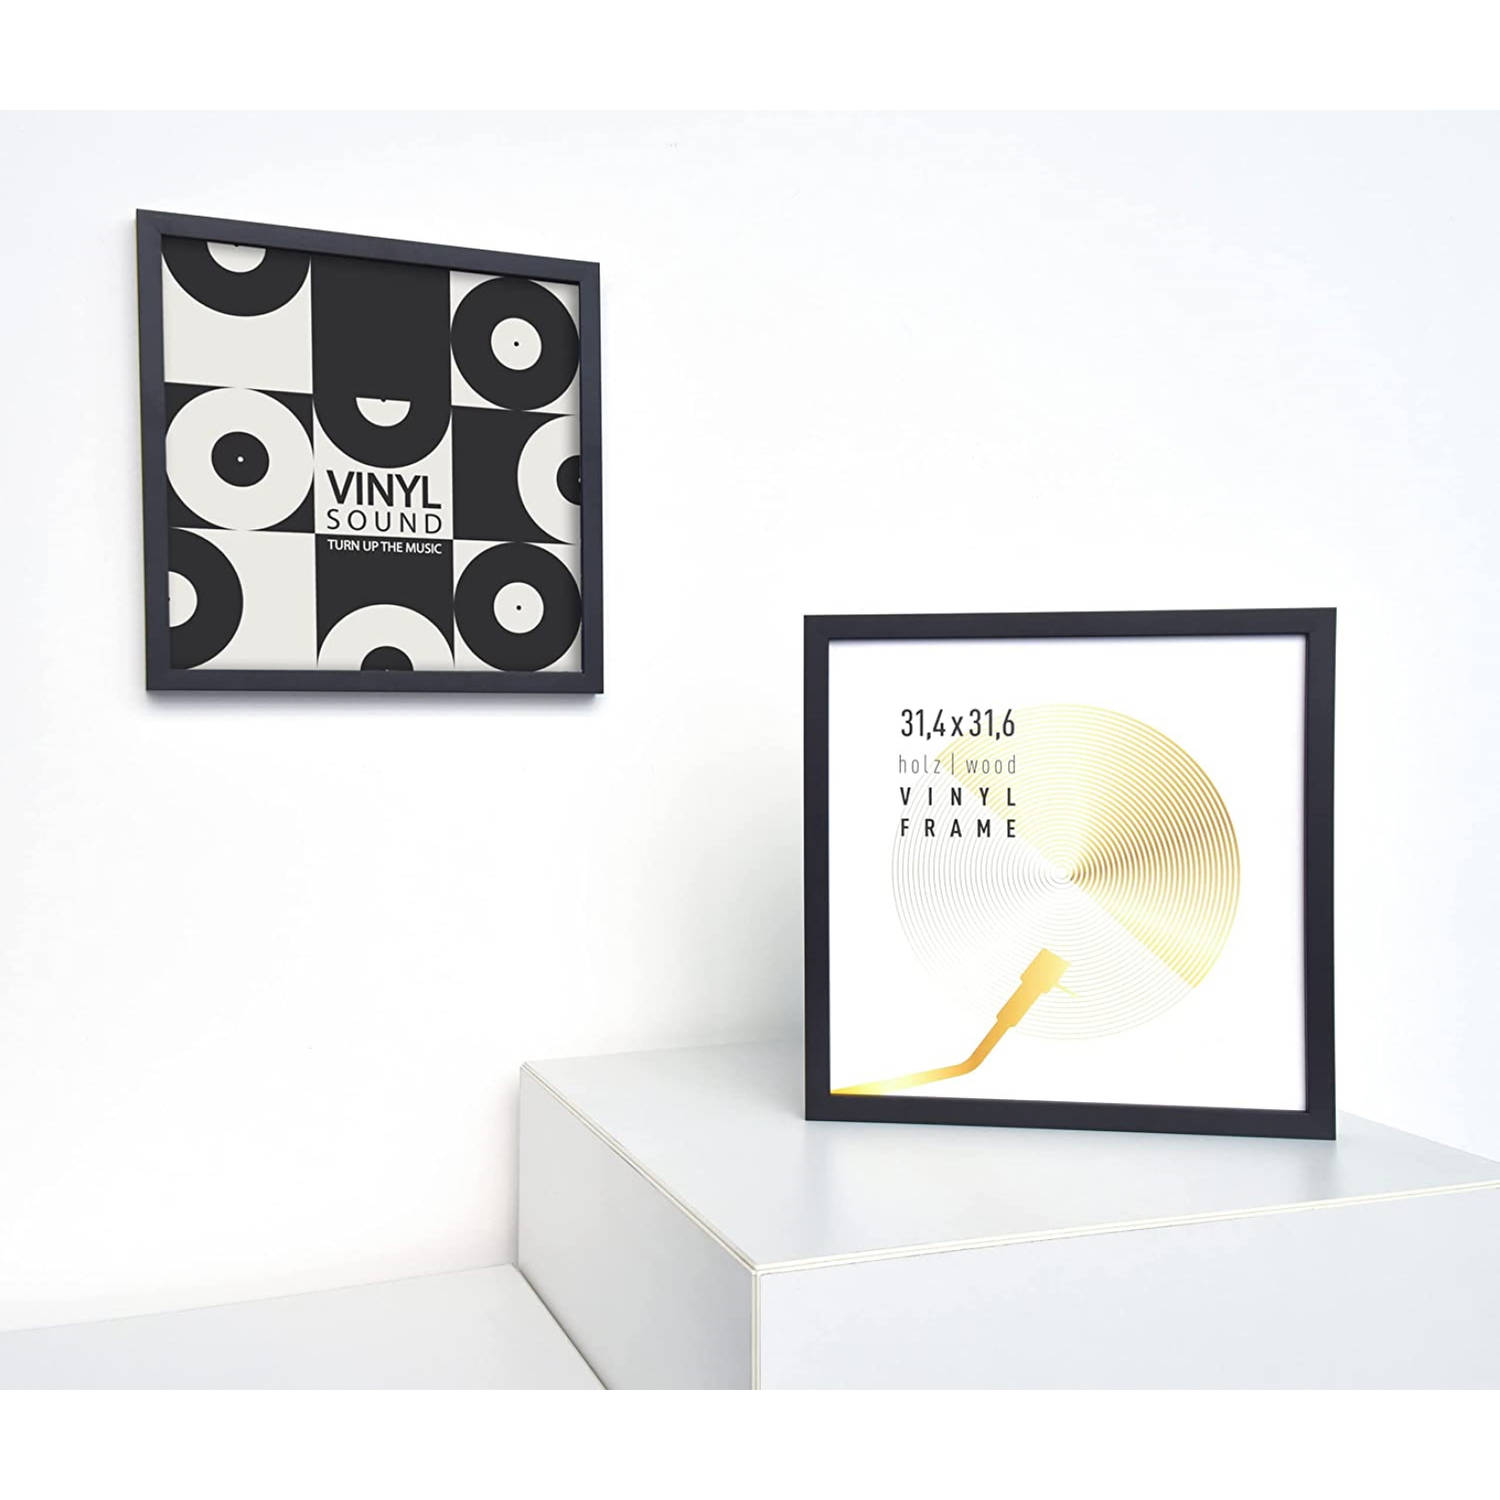 statisch Sleutel betreden Vinyl lp platen wissellijst - frame lijst voor inlijsten LP vinyl elpee  platen - hout - zwart - 3 stuks | Blokker